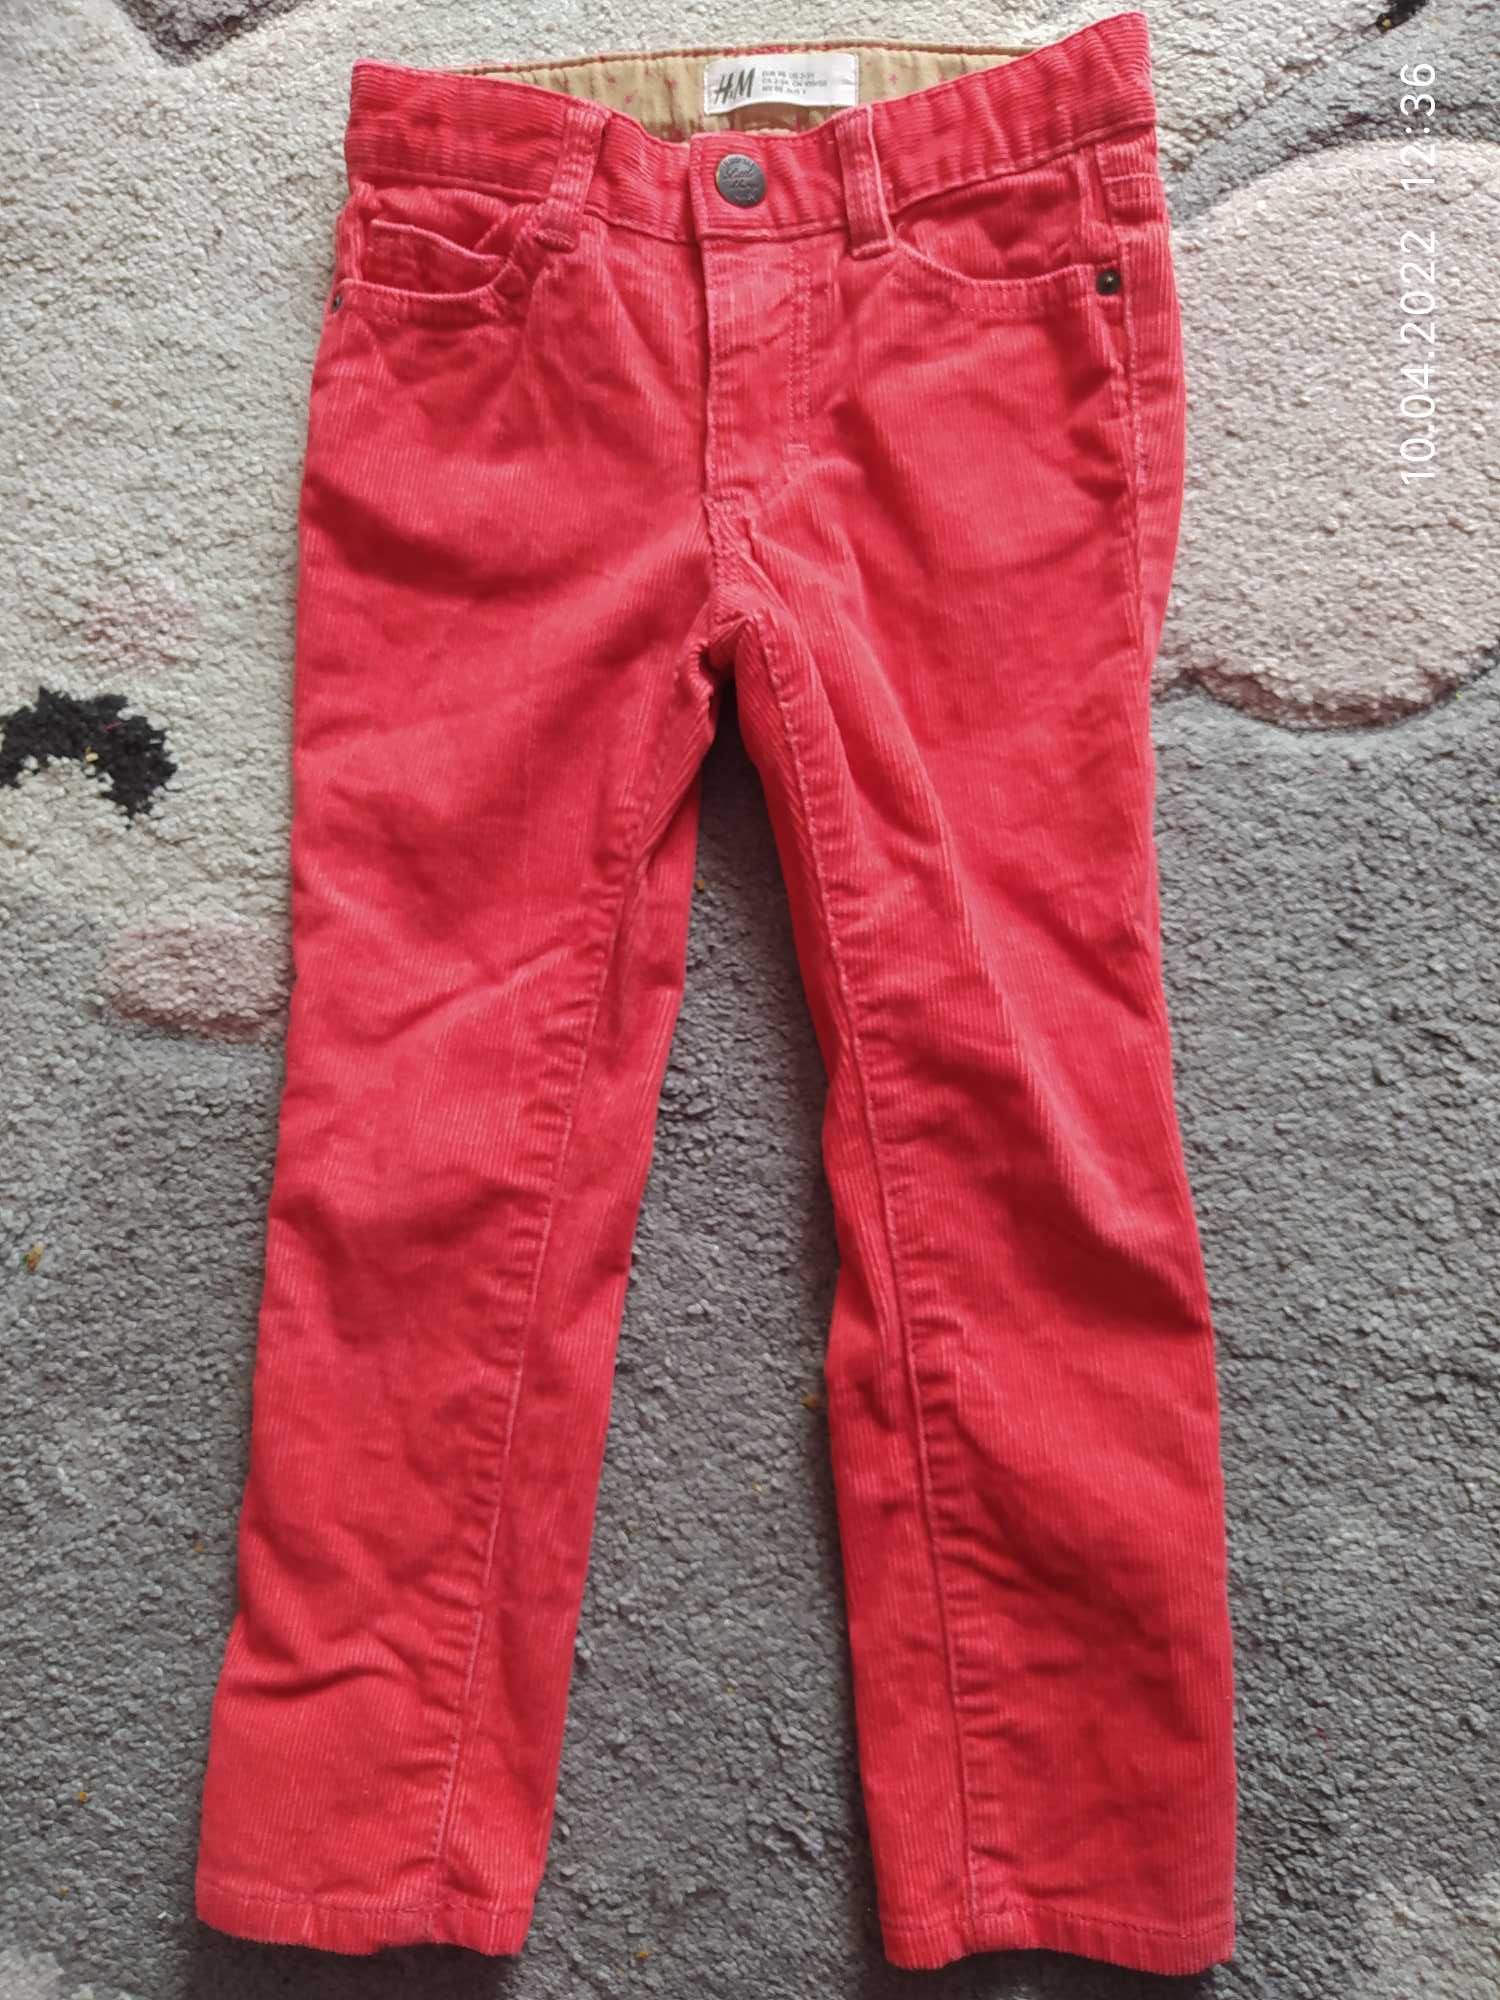 Spodnie H&M 98 cm dla dziewczynki, sztruks